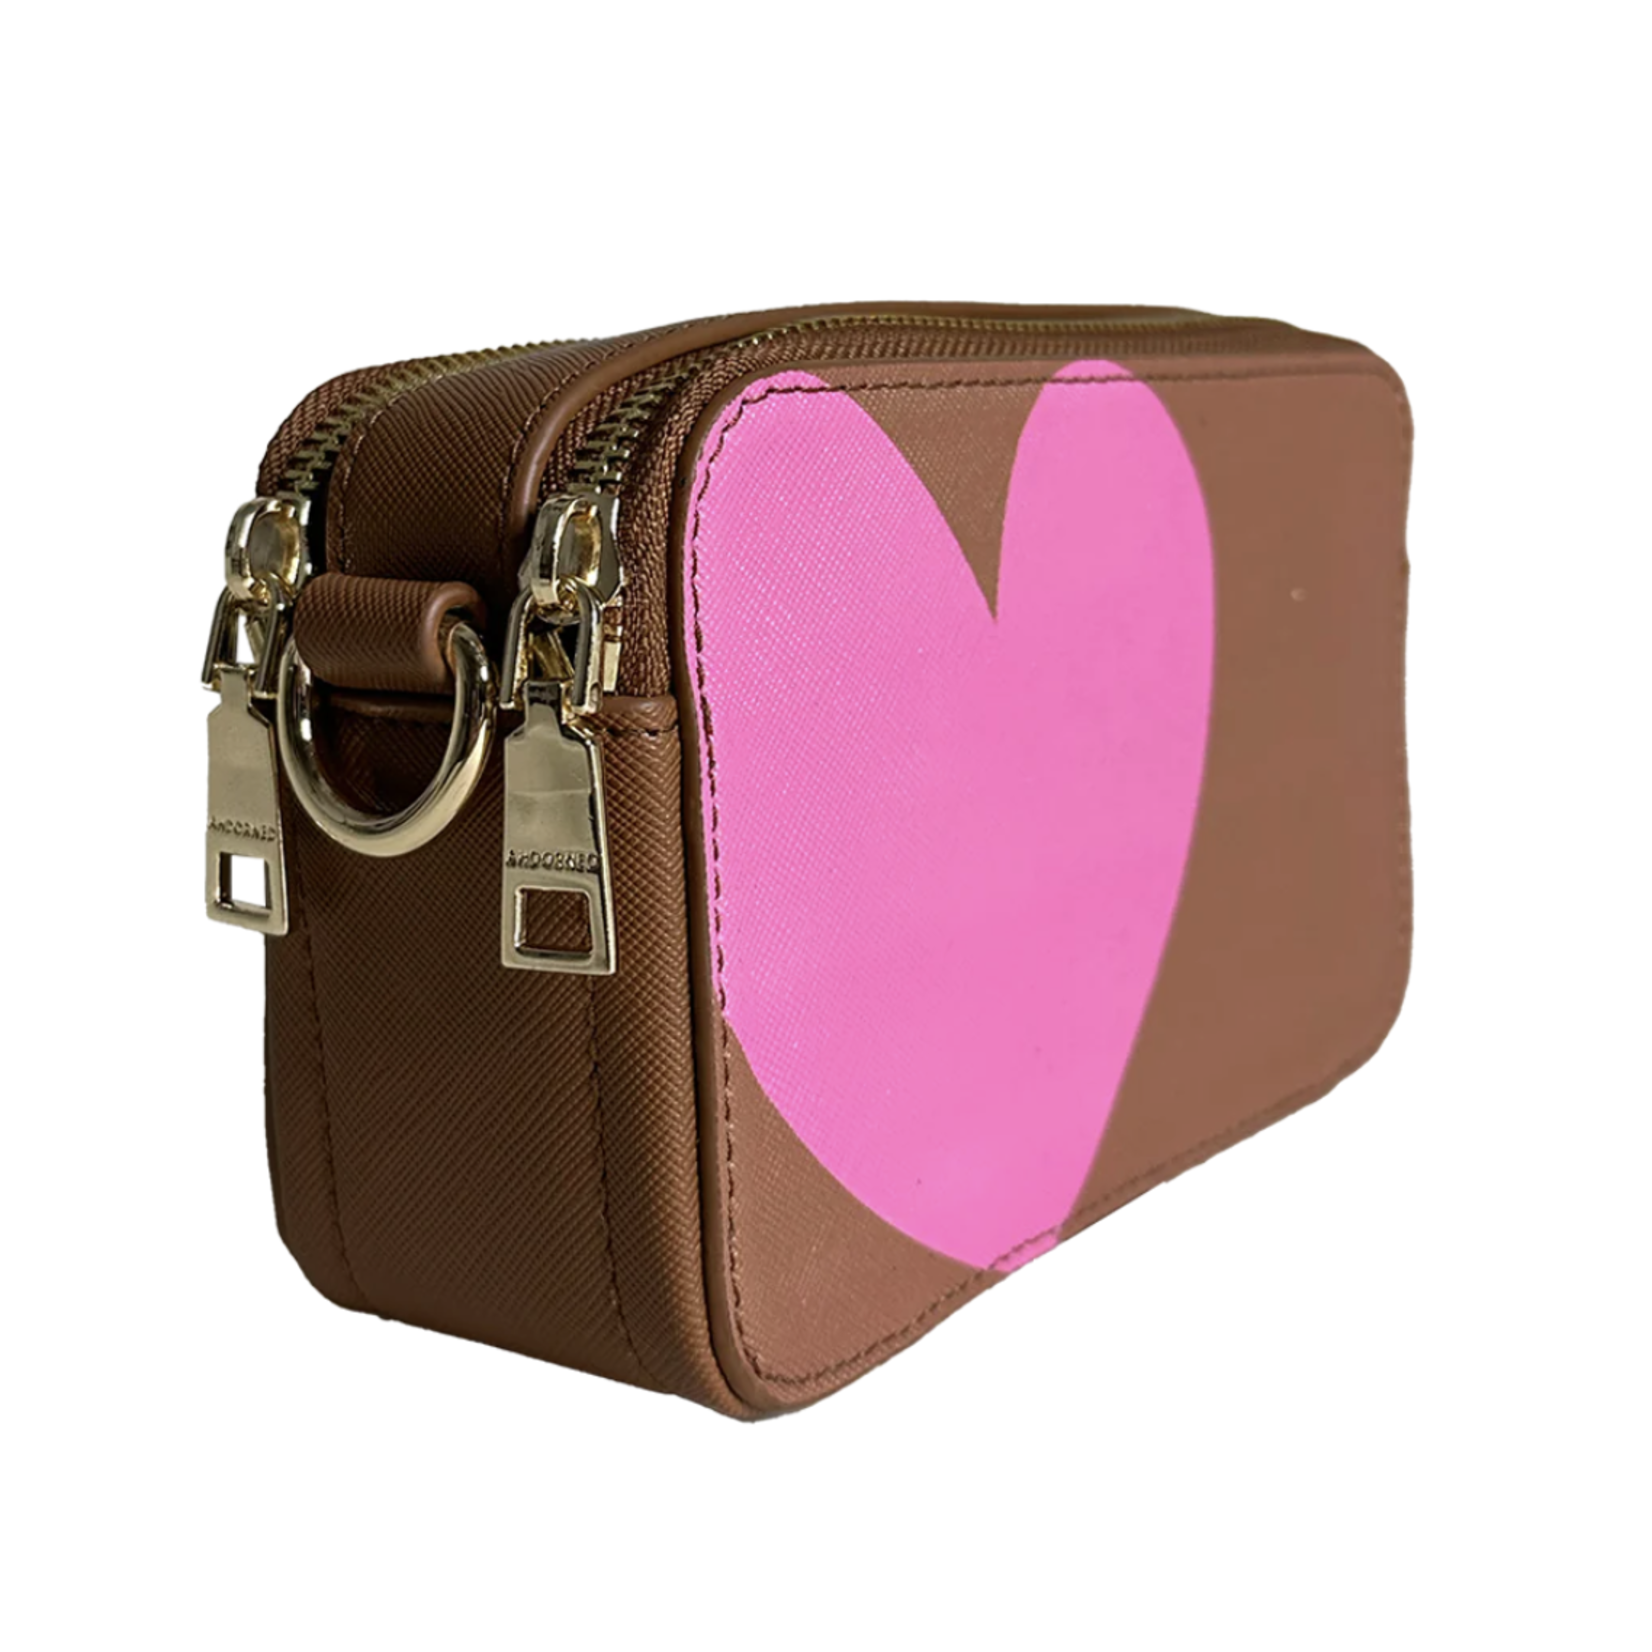 ah-dorned Camel w/ Pink Heart Vegan Leather Camera Bag